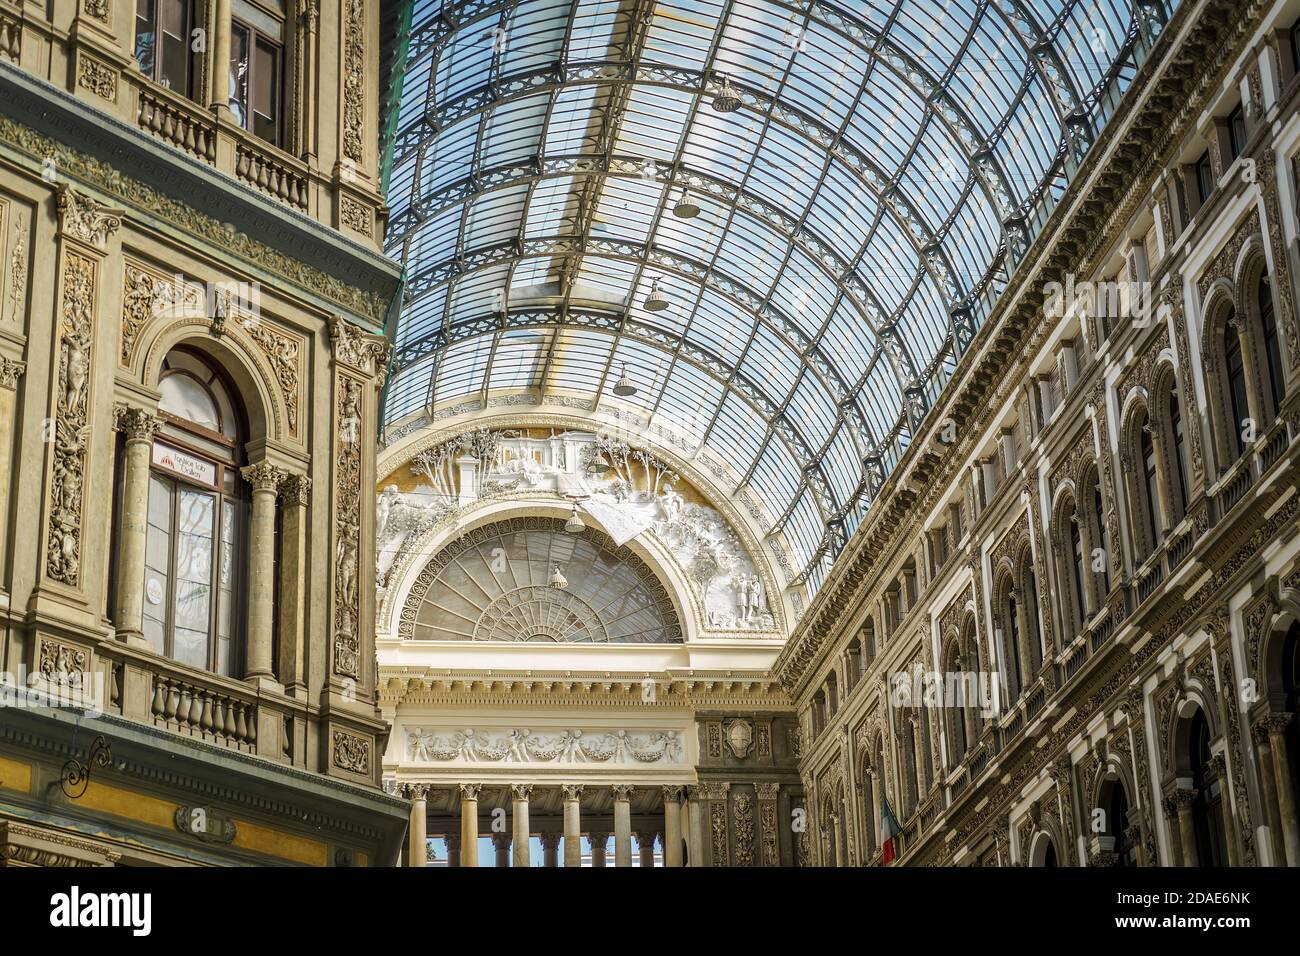 Naples, Campanie, Italie, octobre 2020 : le toit en verre de la galerie marchande publique Galleria Umberto I à Naples. Construit à la fin du XIXe siècle. Banque D'Images